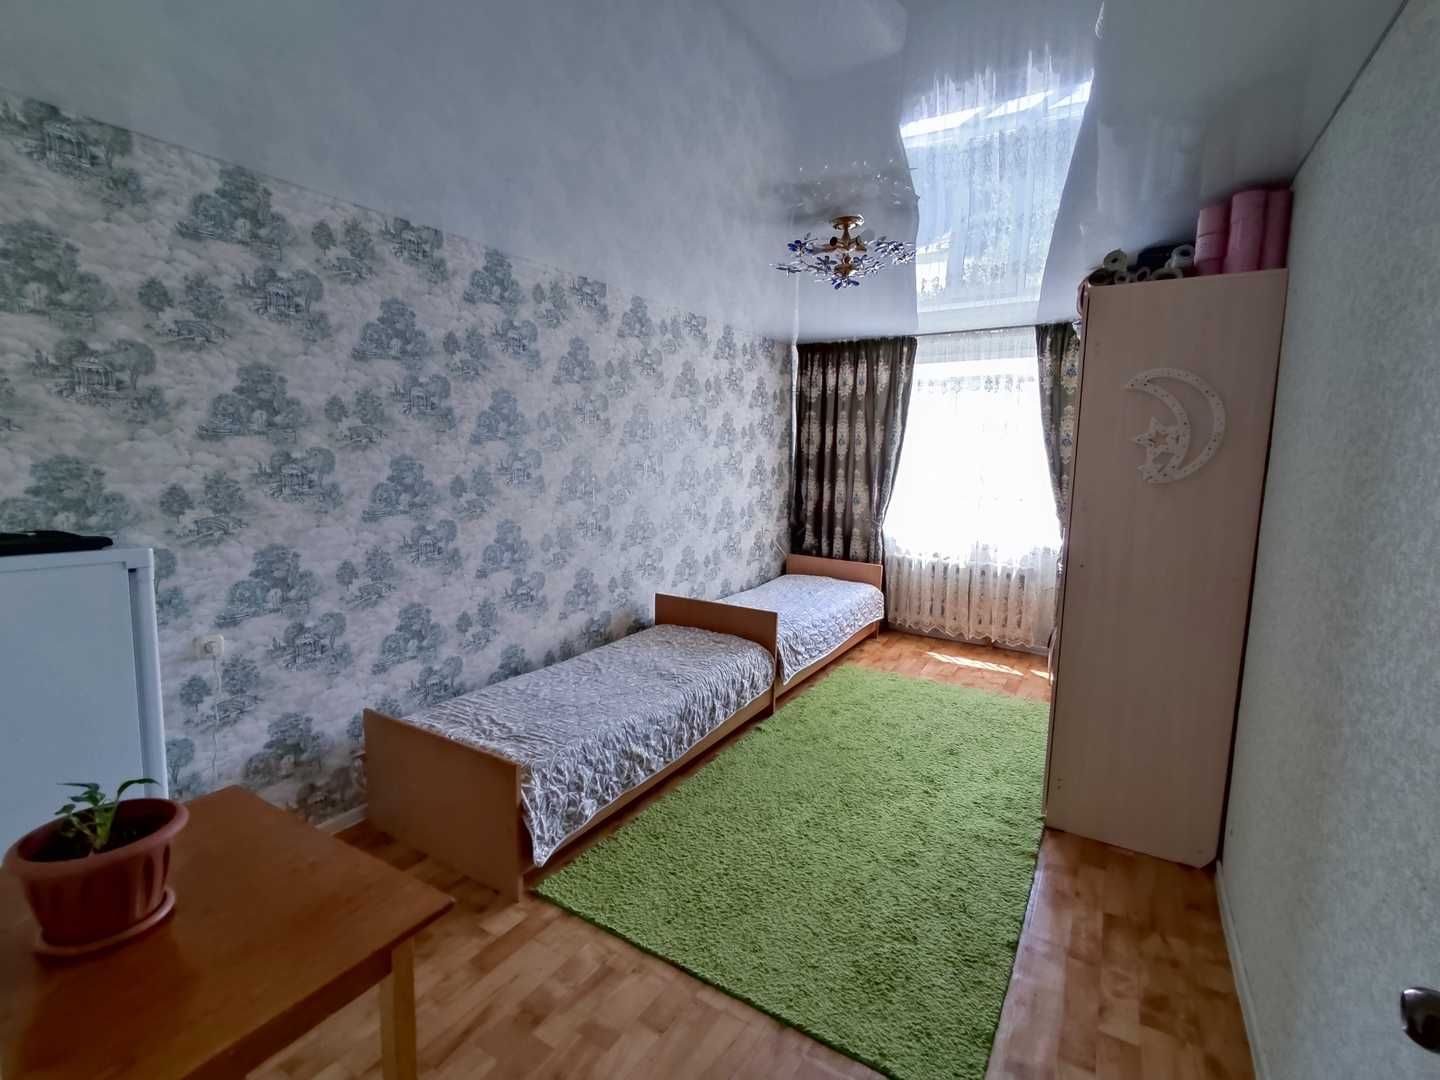 Продам 2-х комнатную квартиру на Ворошилова 52 на 3 этаже